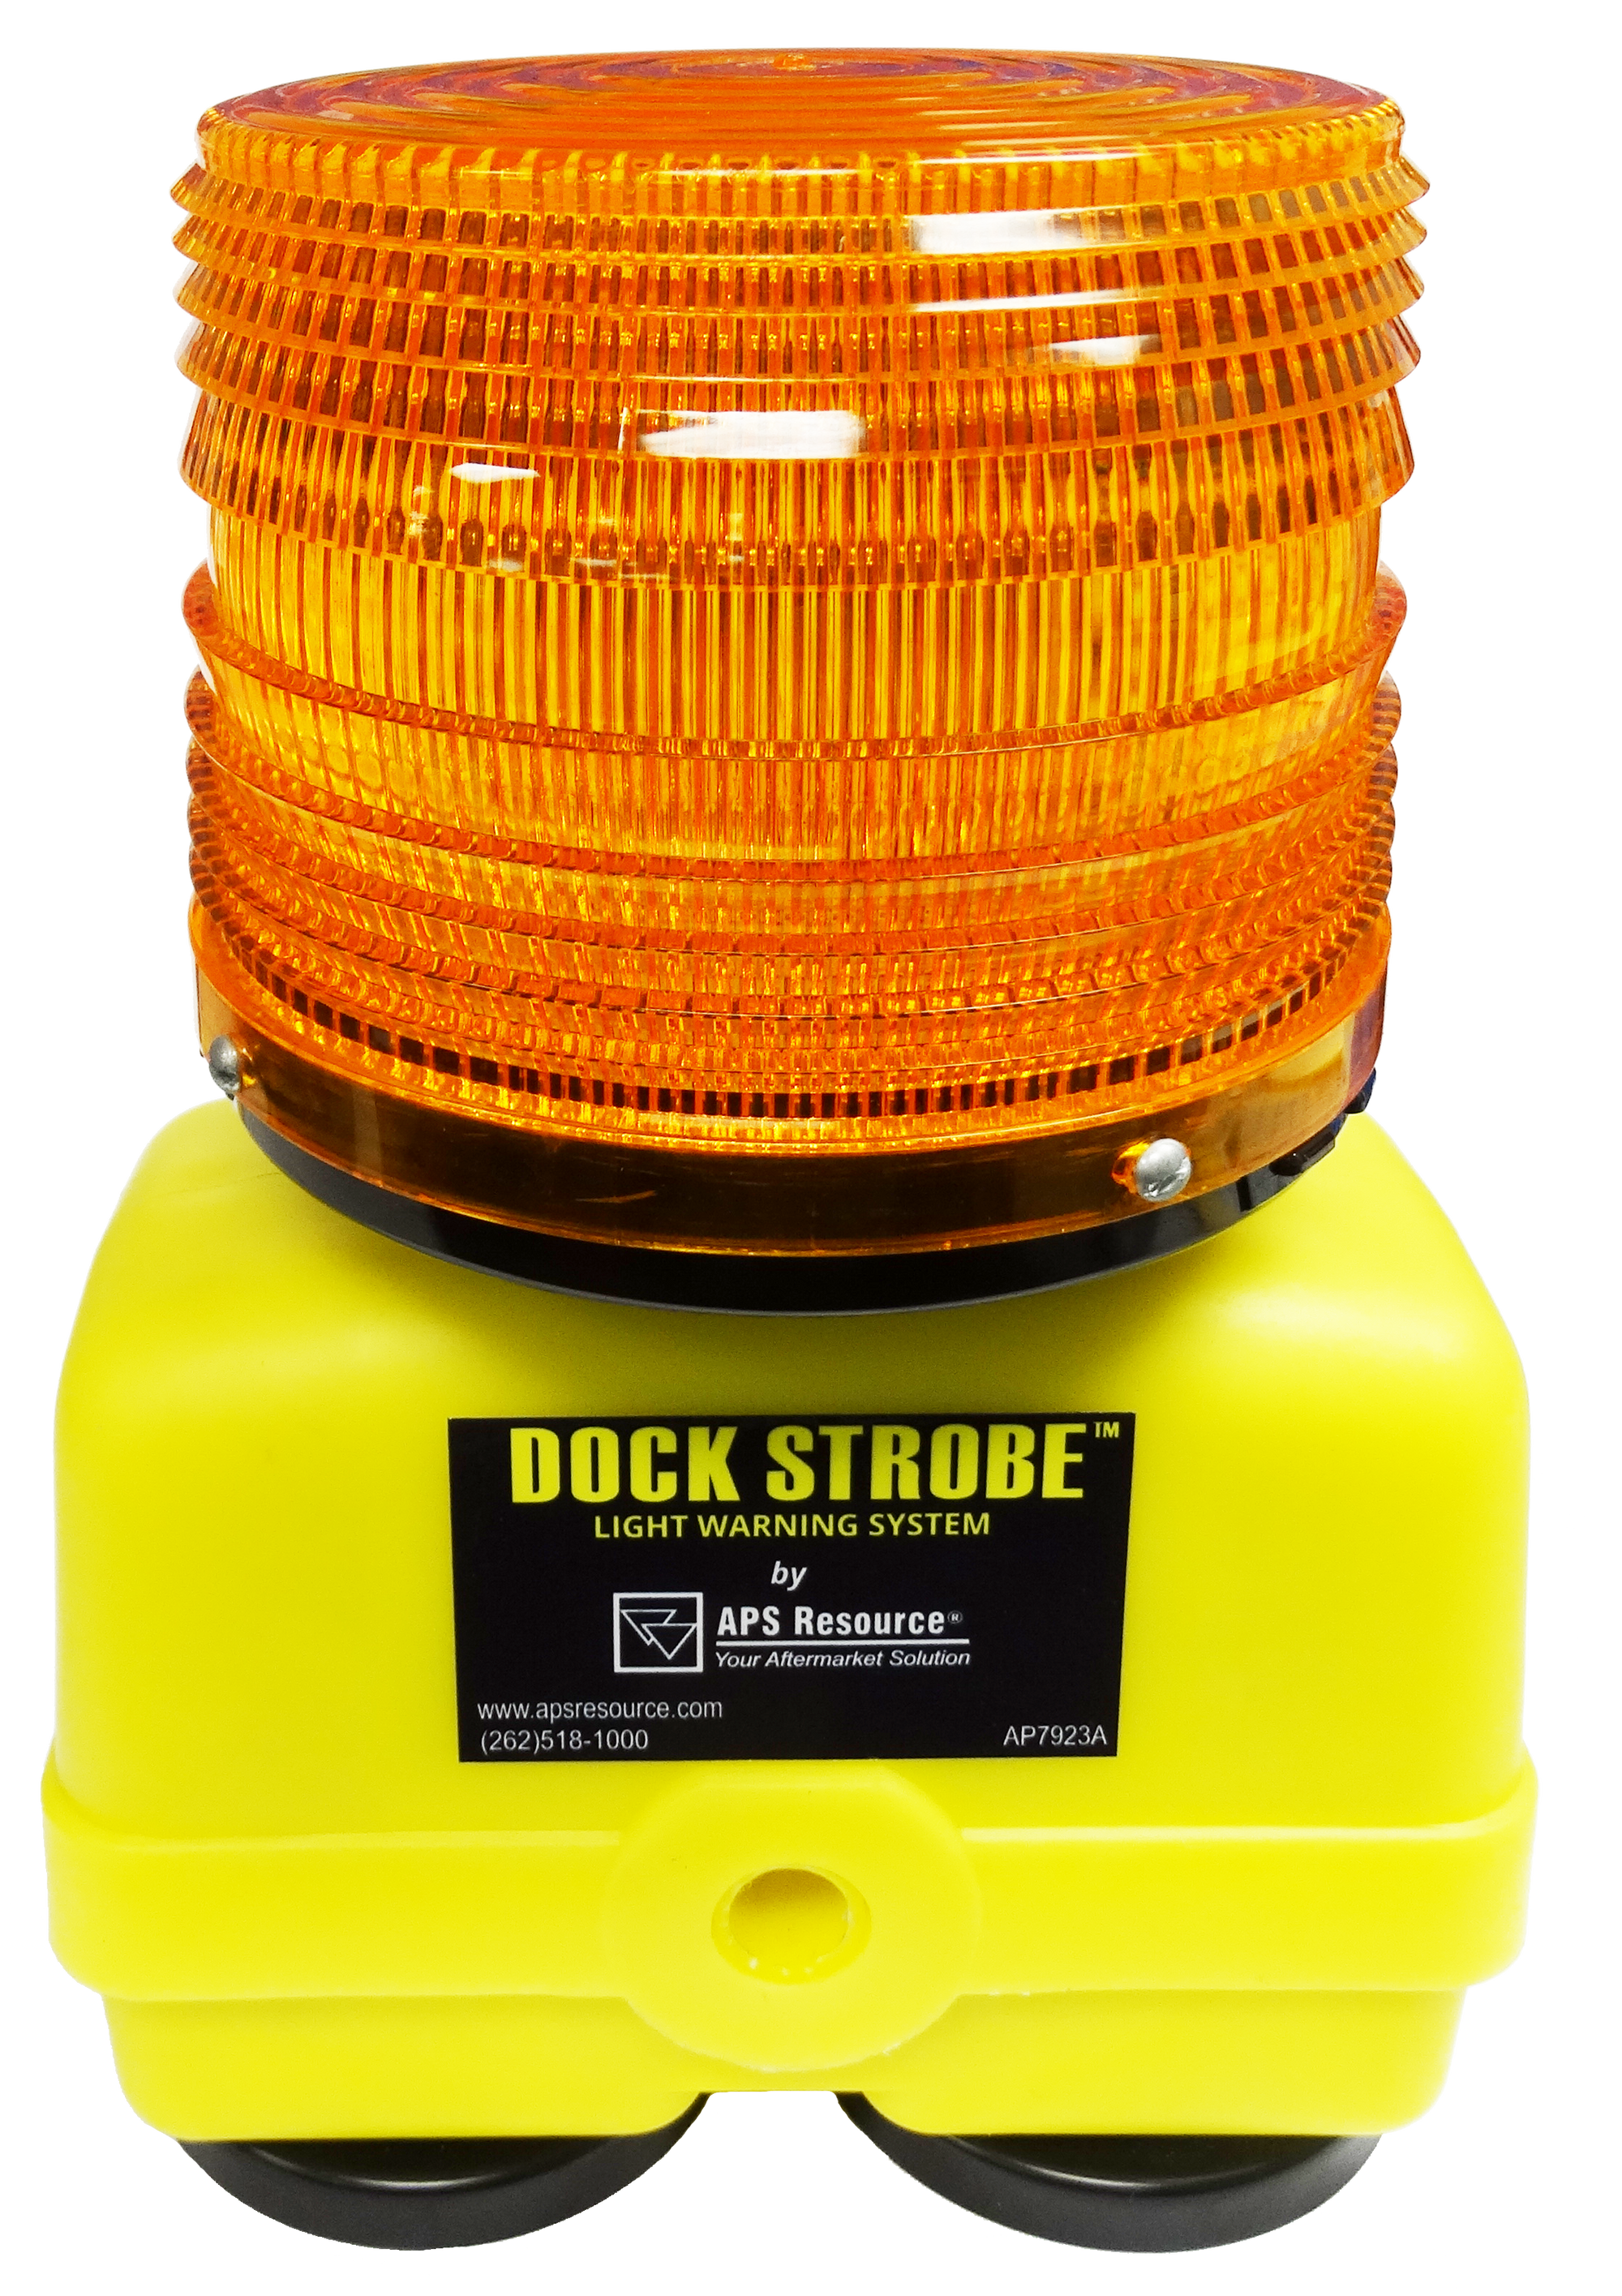 Dock Strobe Light